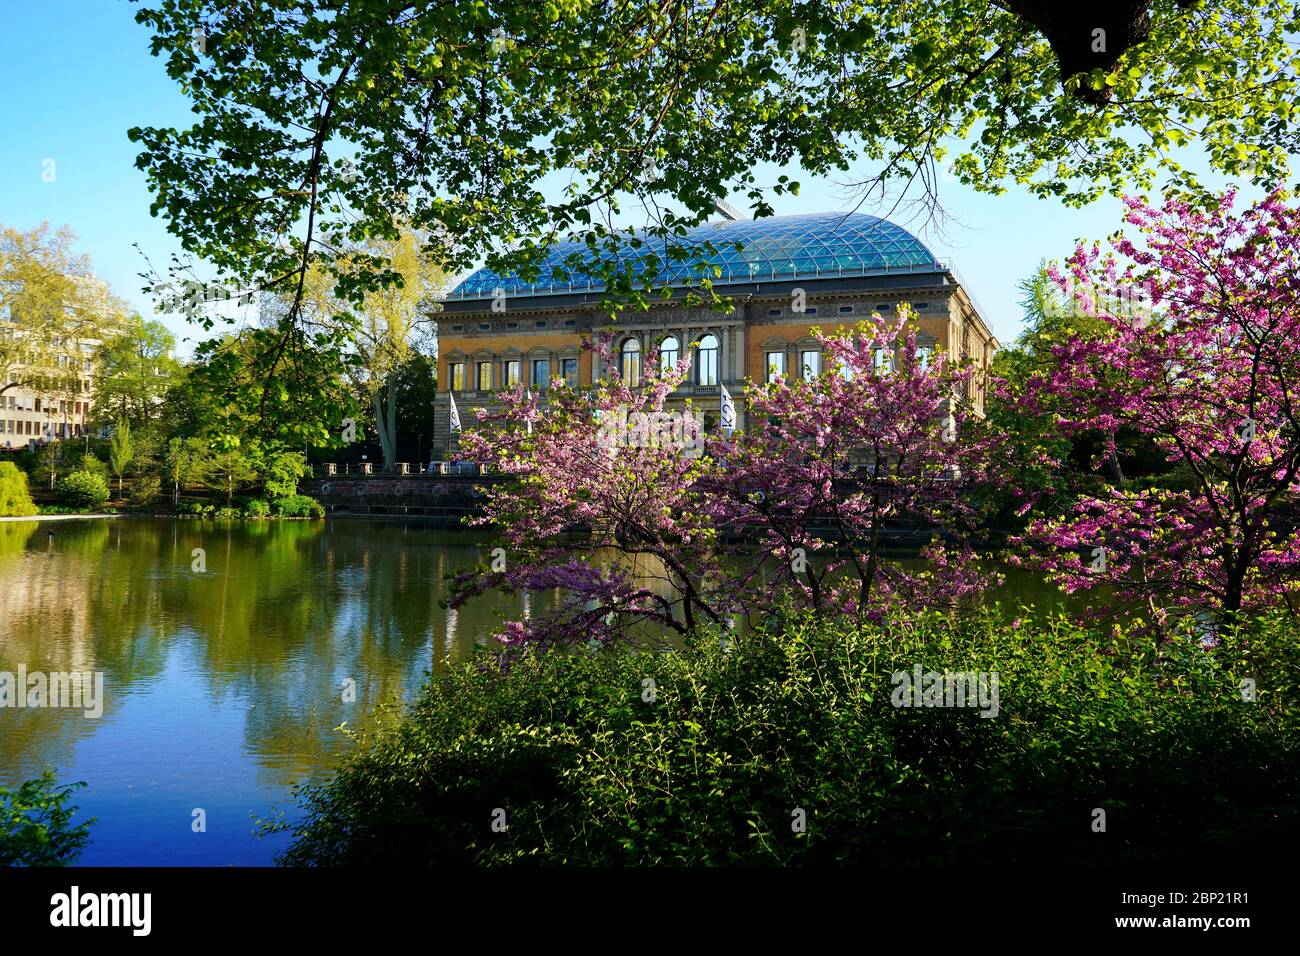 Ancien bâtiment „Ständehaus, construit de 1876 à 1880, à 'Kaiserteich' (étang de l'empereur). Magnifique paysage idyllique avec fleurs de cerisier rose. Banque D'Images